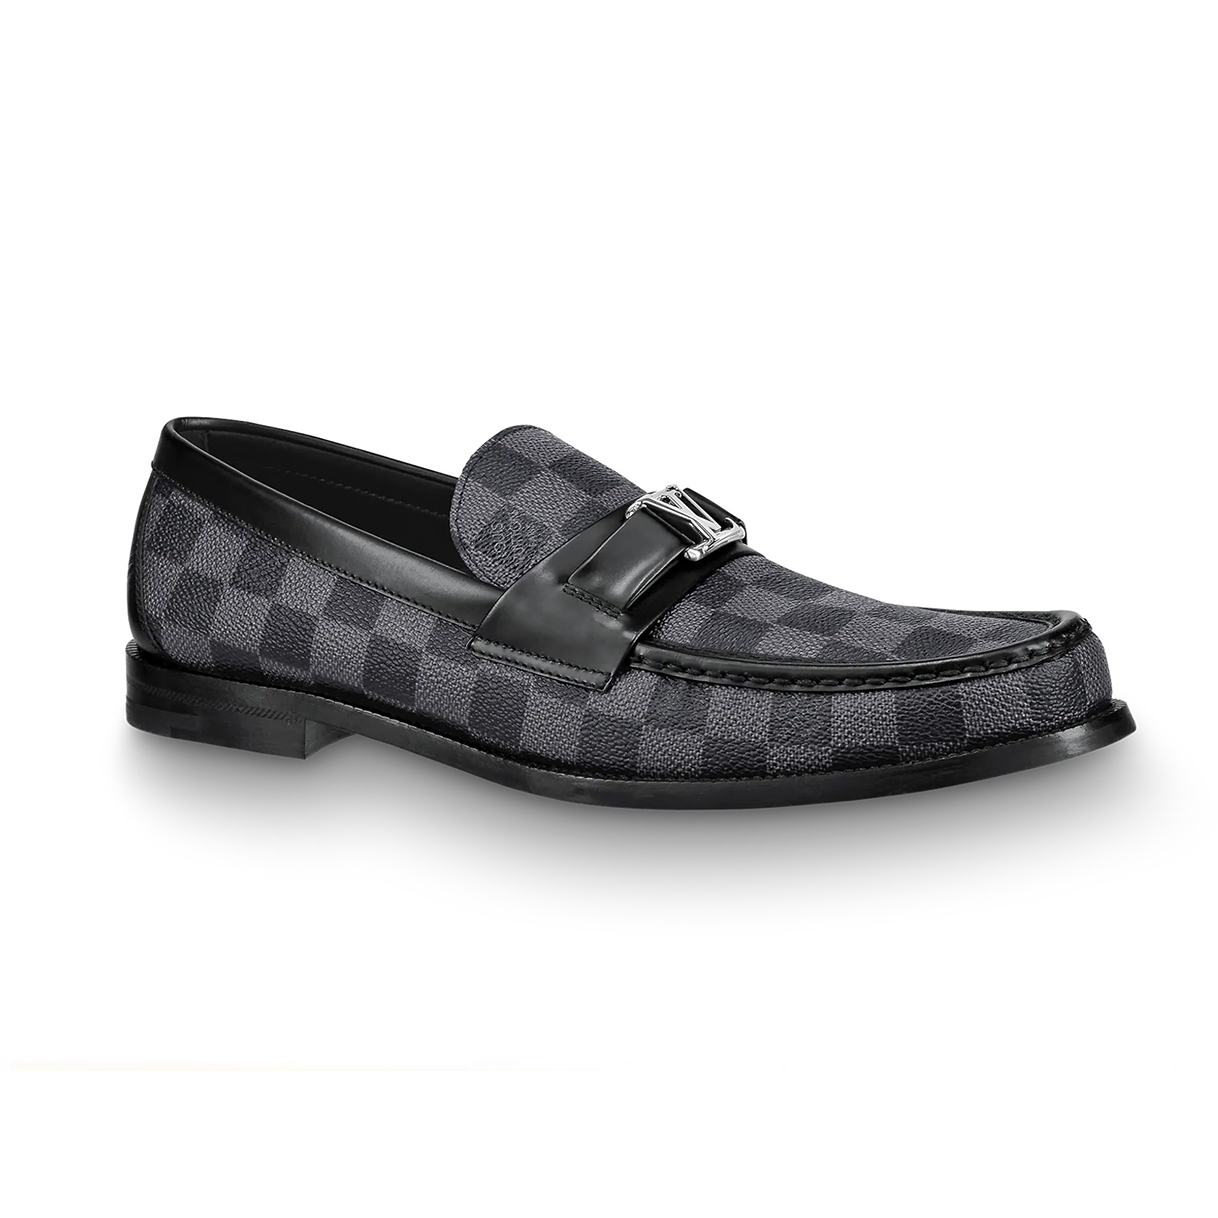 Giày lười Louis Vuitton Racer Moccasin đế cao họa tiết caro đen